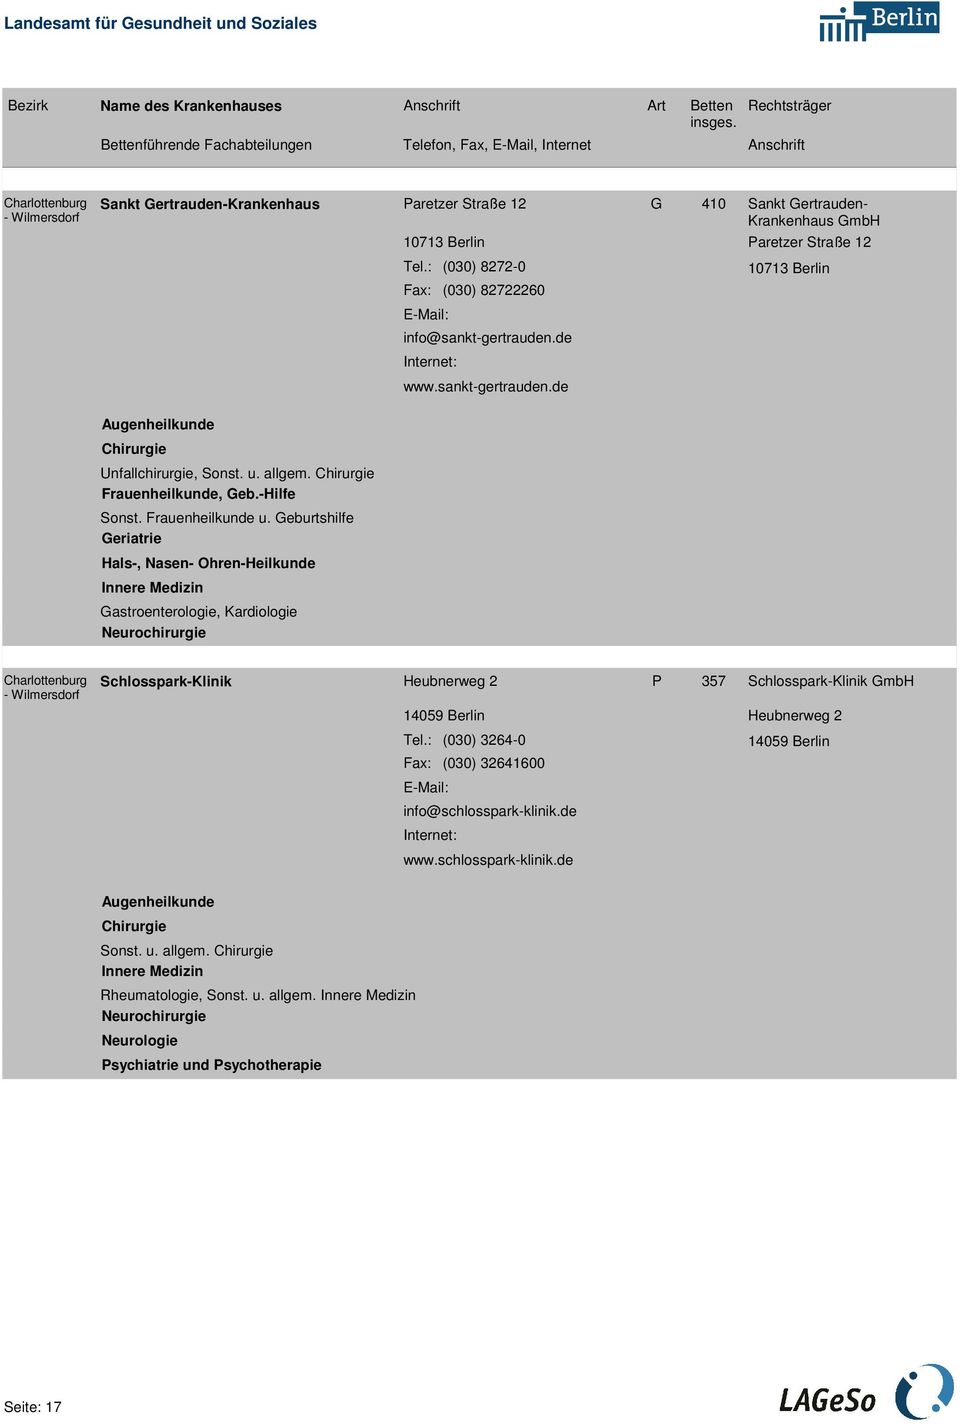 Geburtshilfe Geriatrie Hals-, Nasen- Ohren-Heilkunde Gastroenterologie, Kardiologie Neurochirurgie 0 38 26 Schlosspark-Klinik Heubnerweg 2 P 357 4059 Berlin Tel.